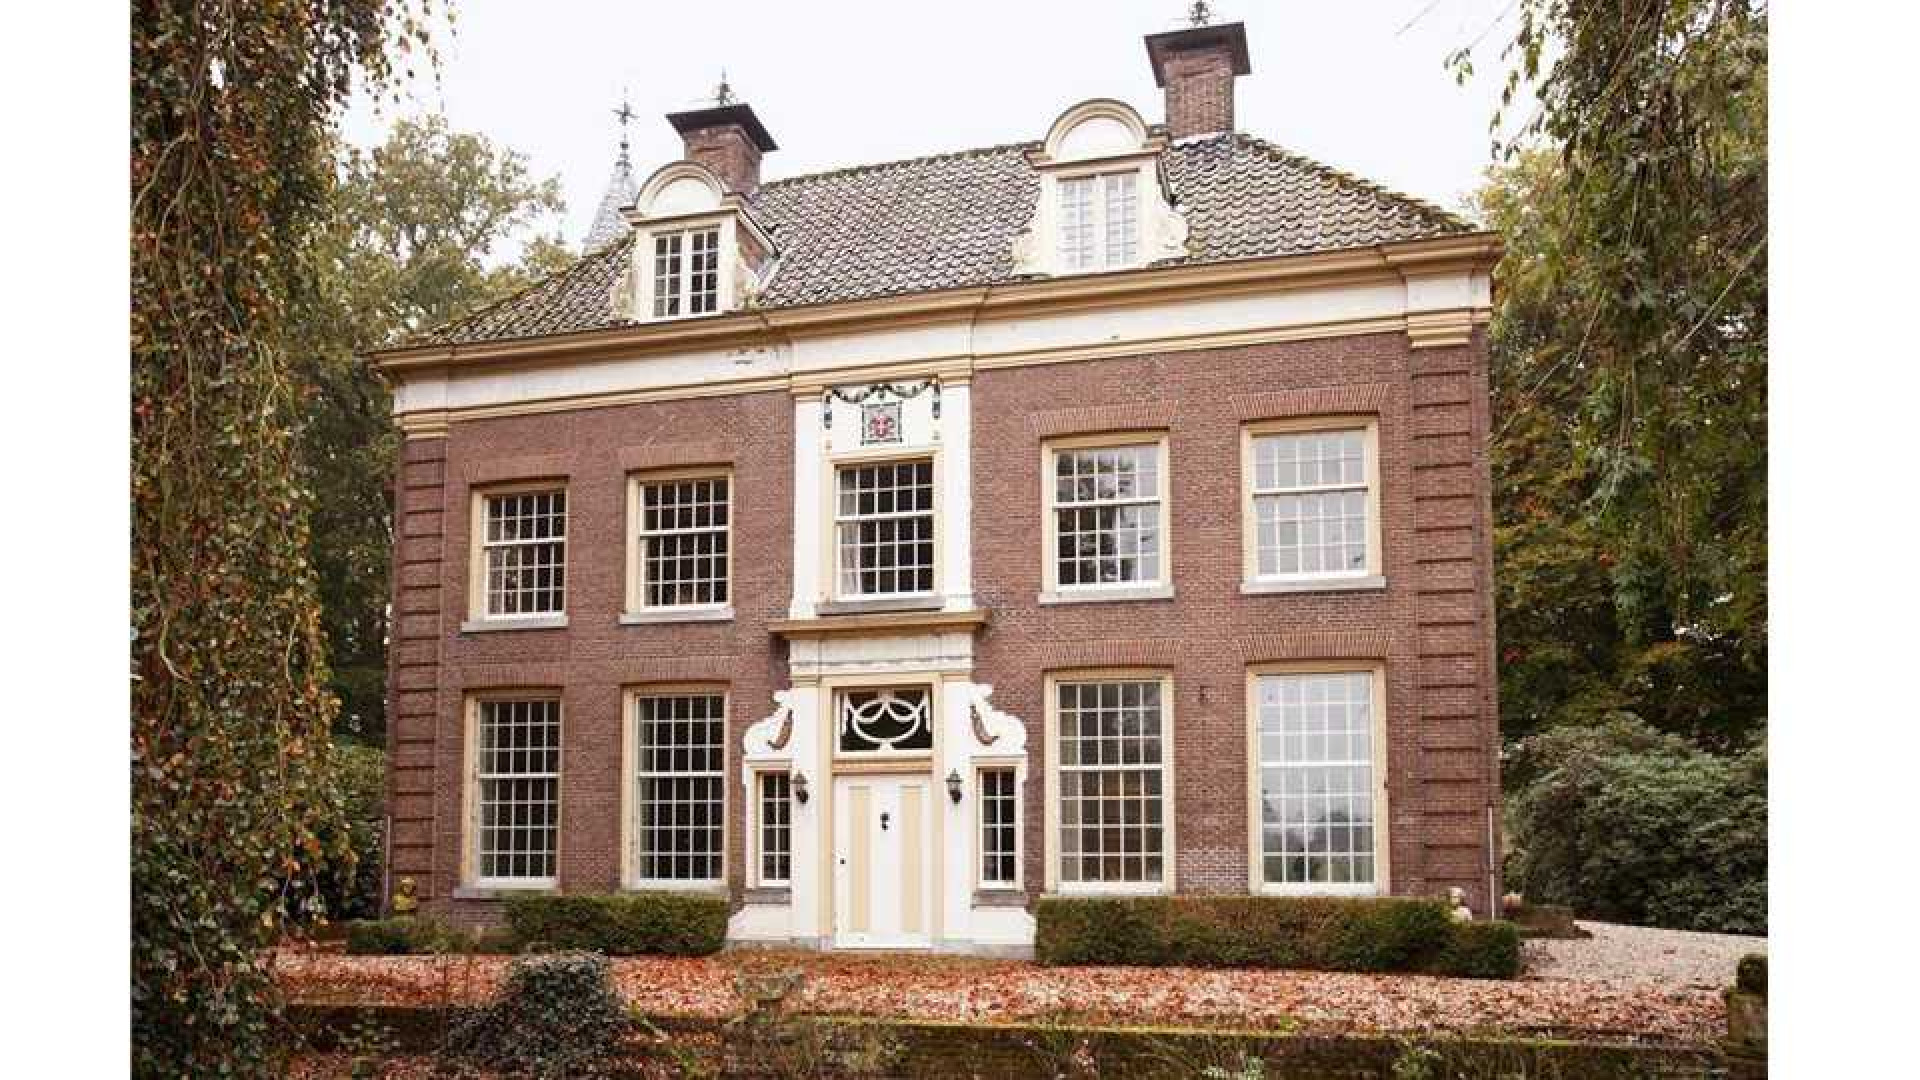 Oud PvdA topman Marcel van Dam verruilt riant landhuis voor eeuwenoud kasteel. Zie foto's